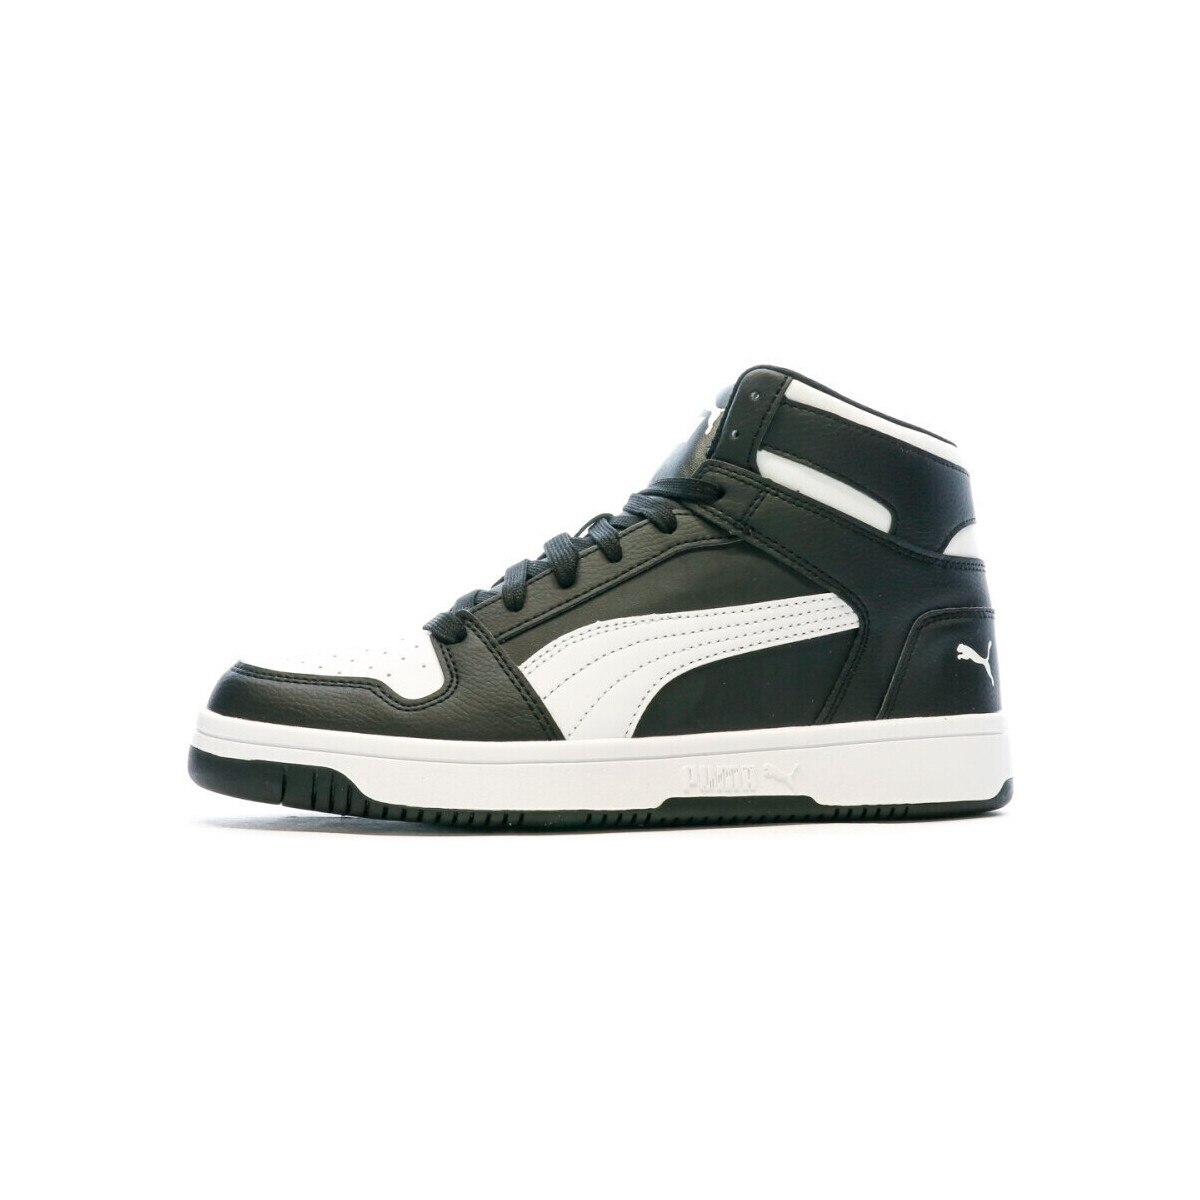 Schuhe Herren Sneaker Low Puma 369573-01 Schwarz